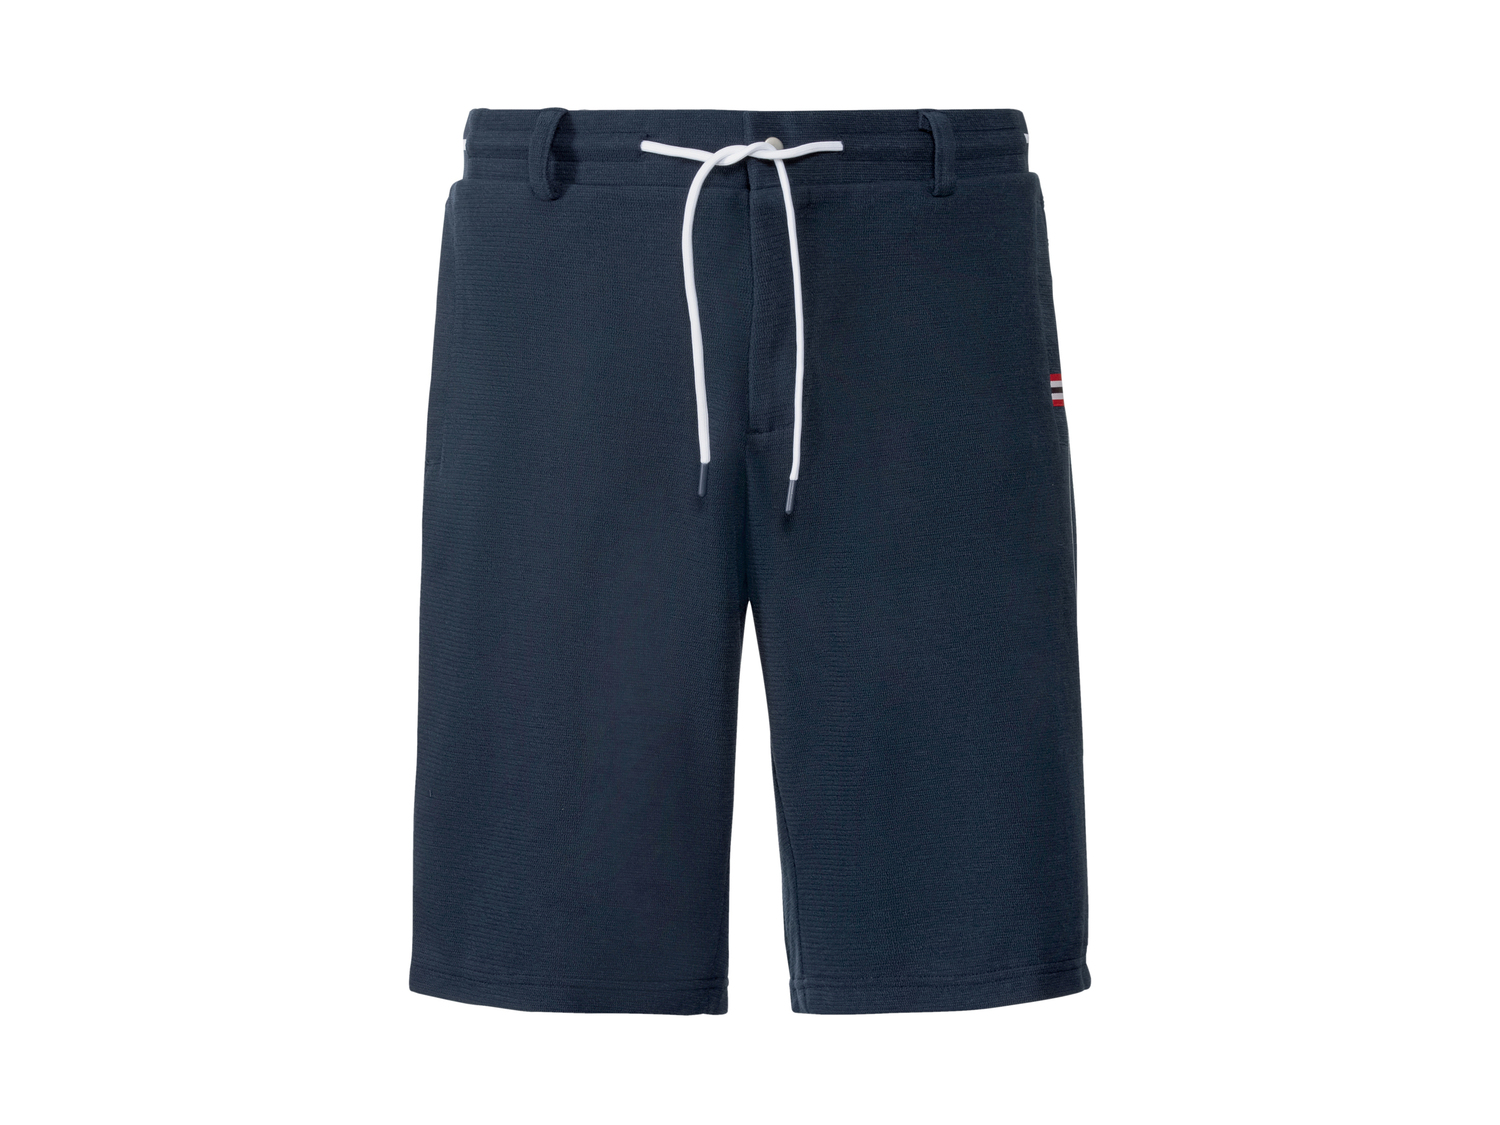 Shorts da uomo Livergy, prezzo 5.99 &#8364; 
Misure: S-XL
Taglie disponibili

Caratteristiche

- ...